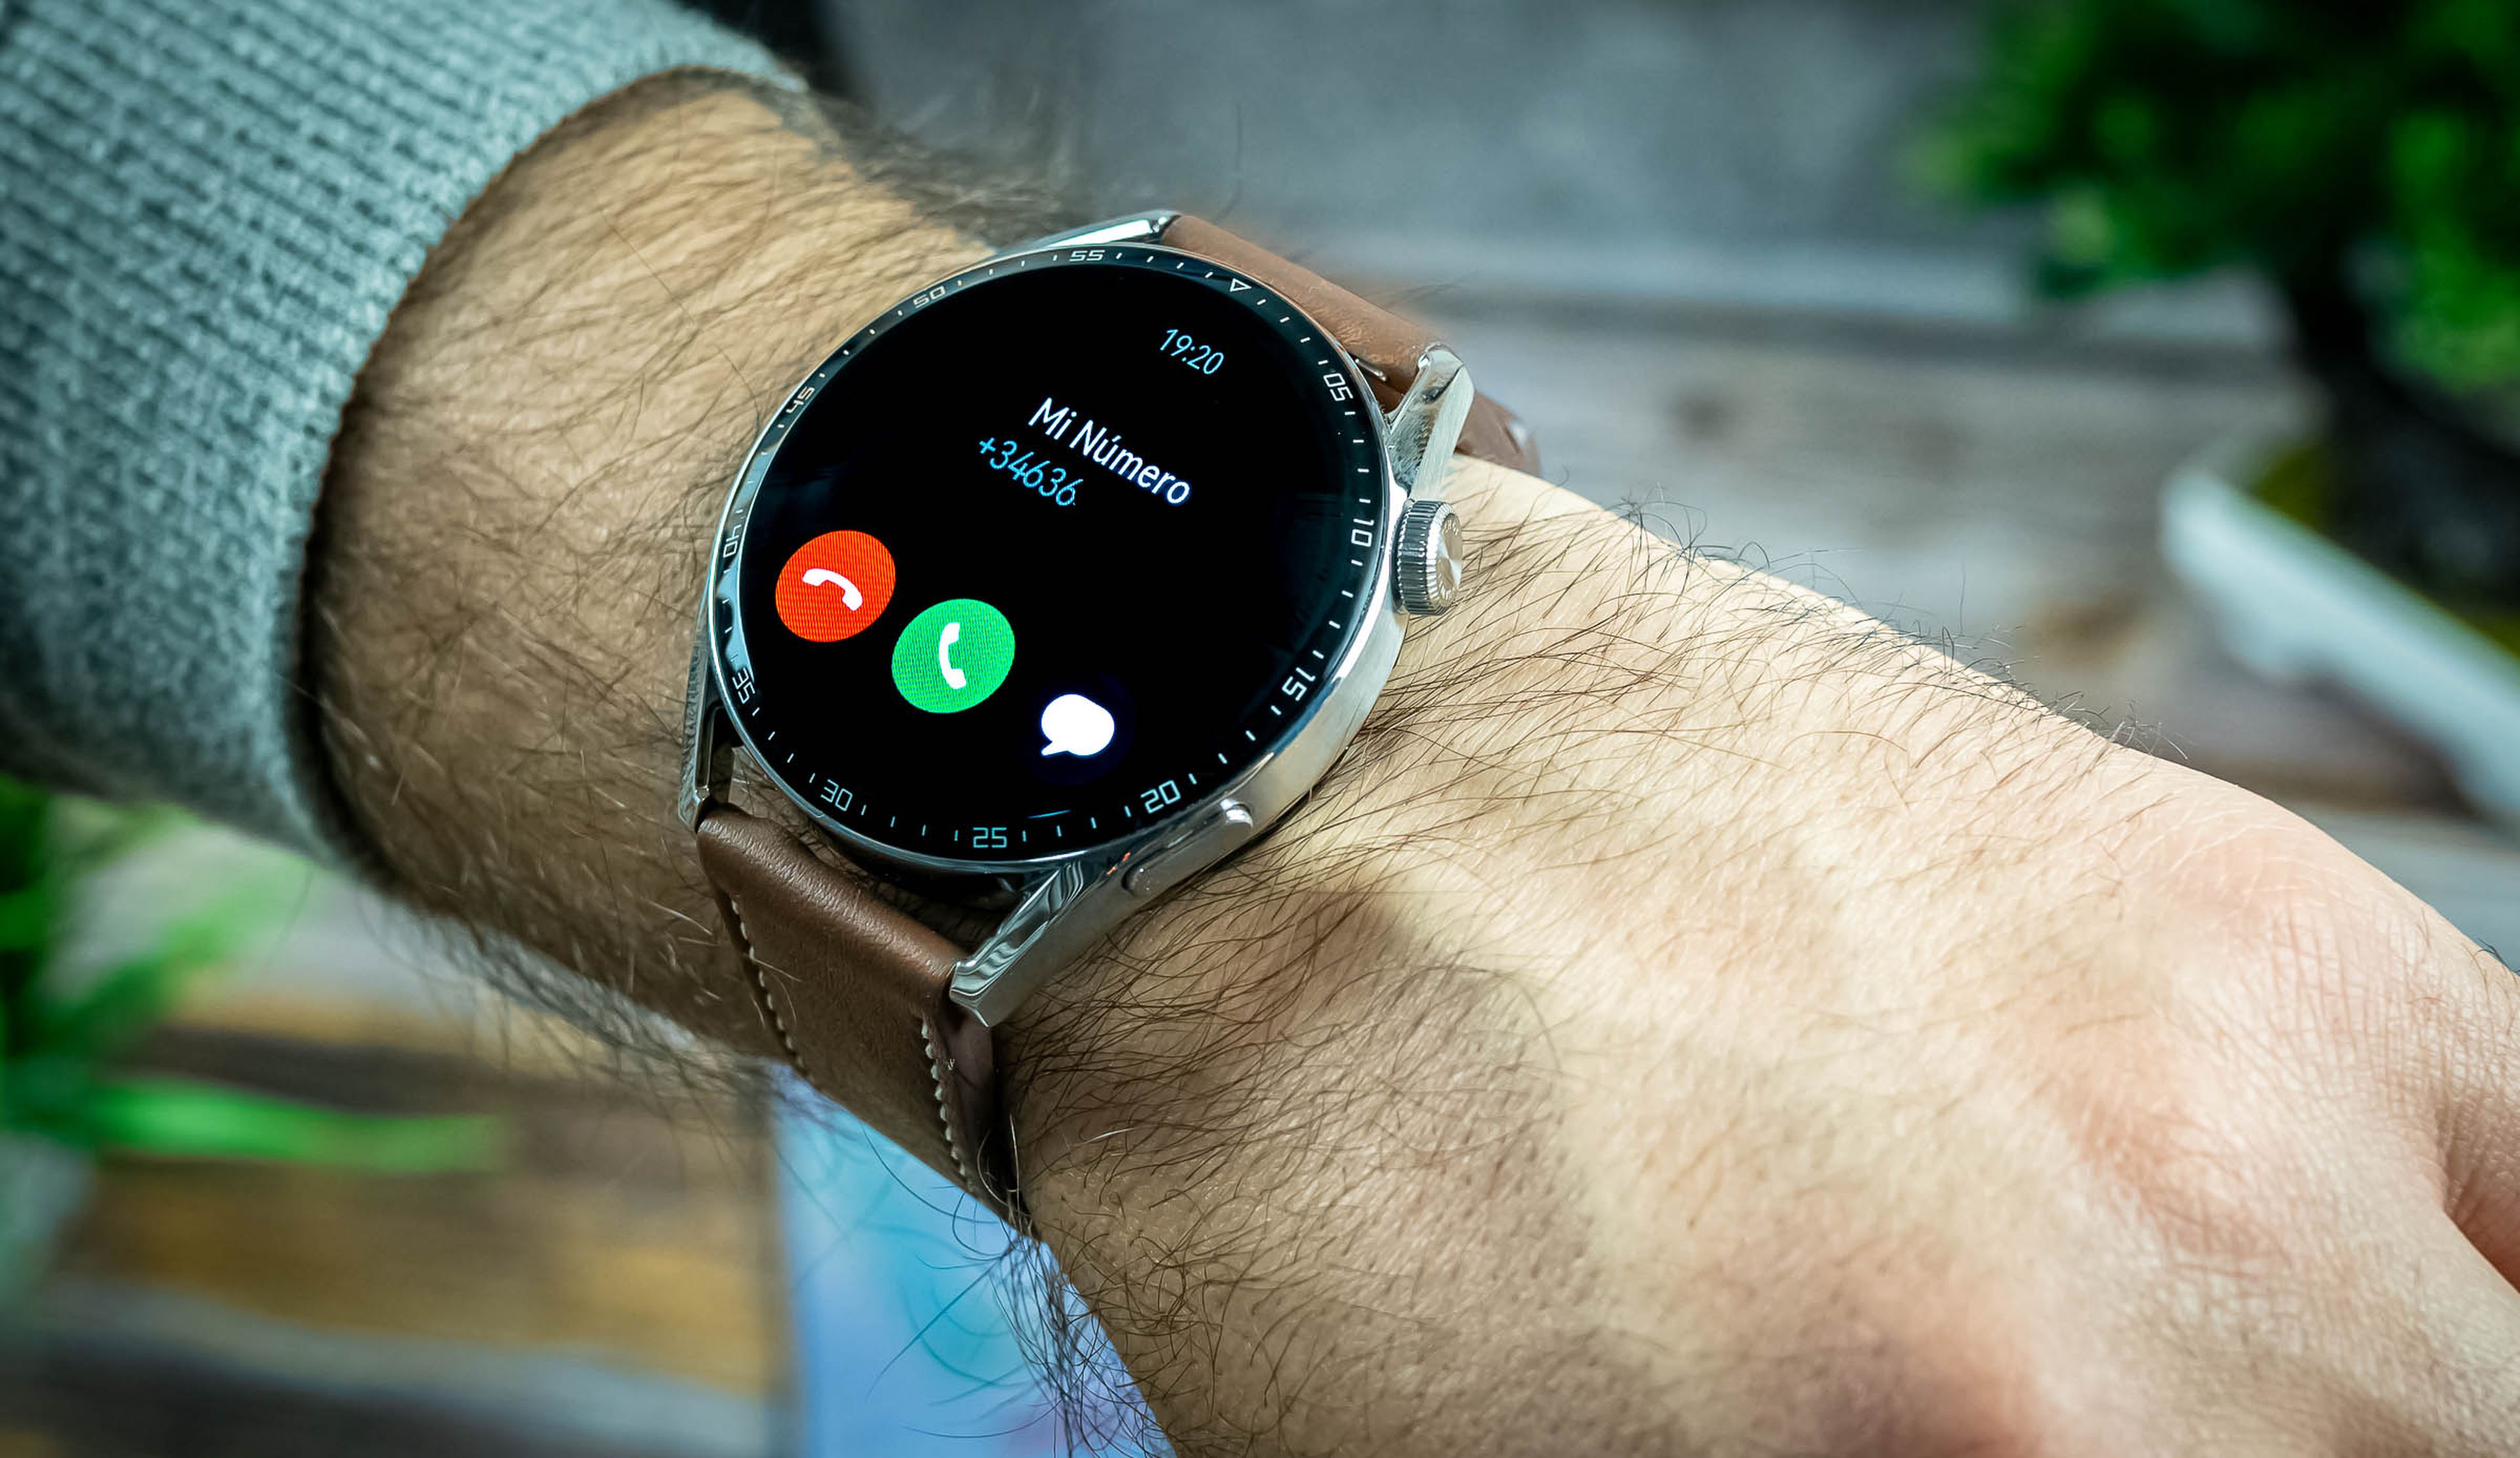 hemos probado y ahora cuesta solo 156 euros: este smartwatch de Huawei es toda ganga | Computer Hoy